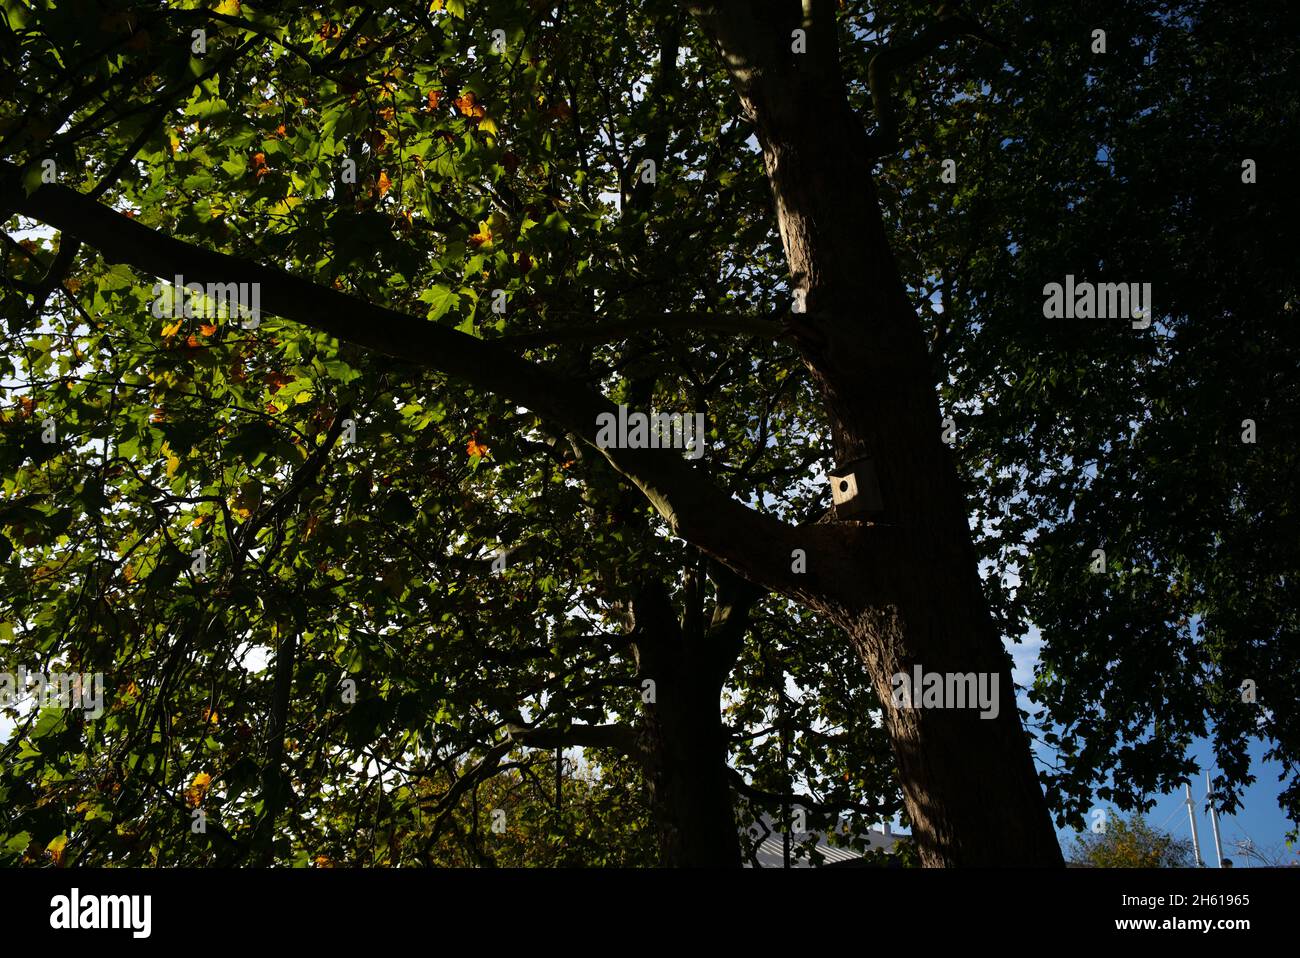 Eine Weitwinkelaufnahme eines Nistkastens, der vom Licht in einem großen Stadtbaum gefangen wurde. Nistkästen im Stadtzentrum von Southampton platziert, um die Tierwelt zu fördern. Stockfoto